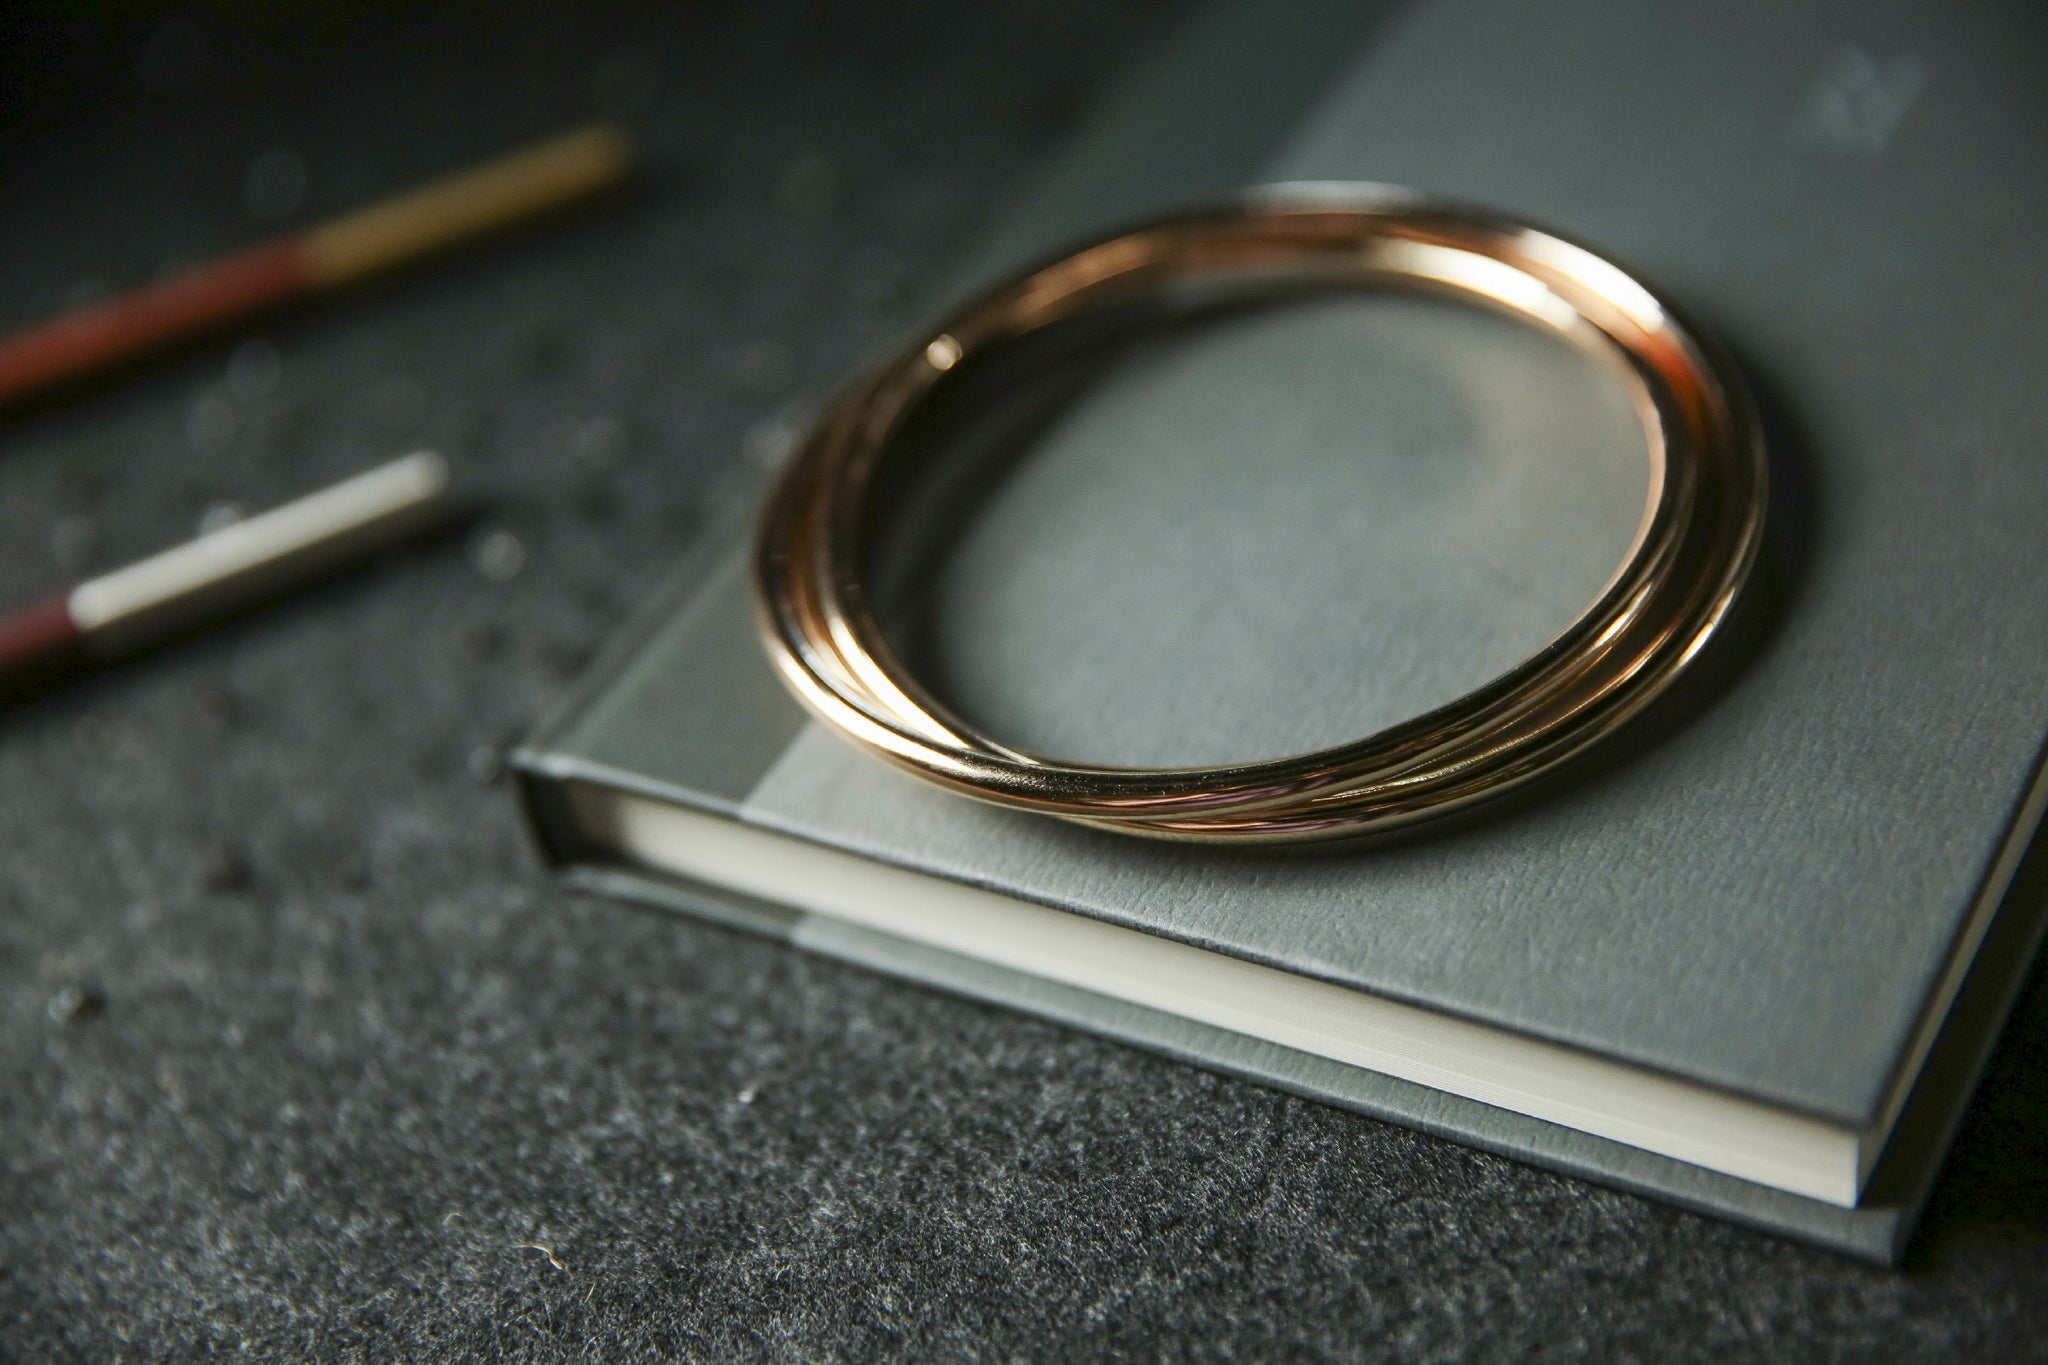 Linking Rings 10 Inch – 8 Piece Set Magnetic Locking Key Ring